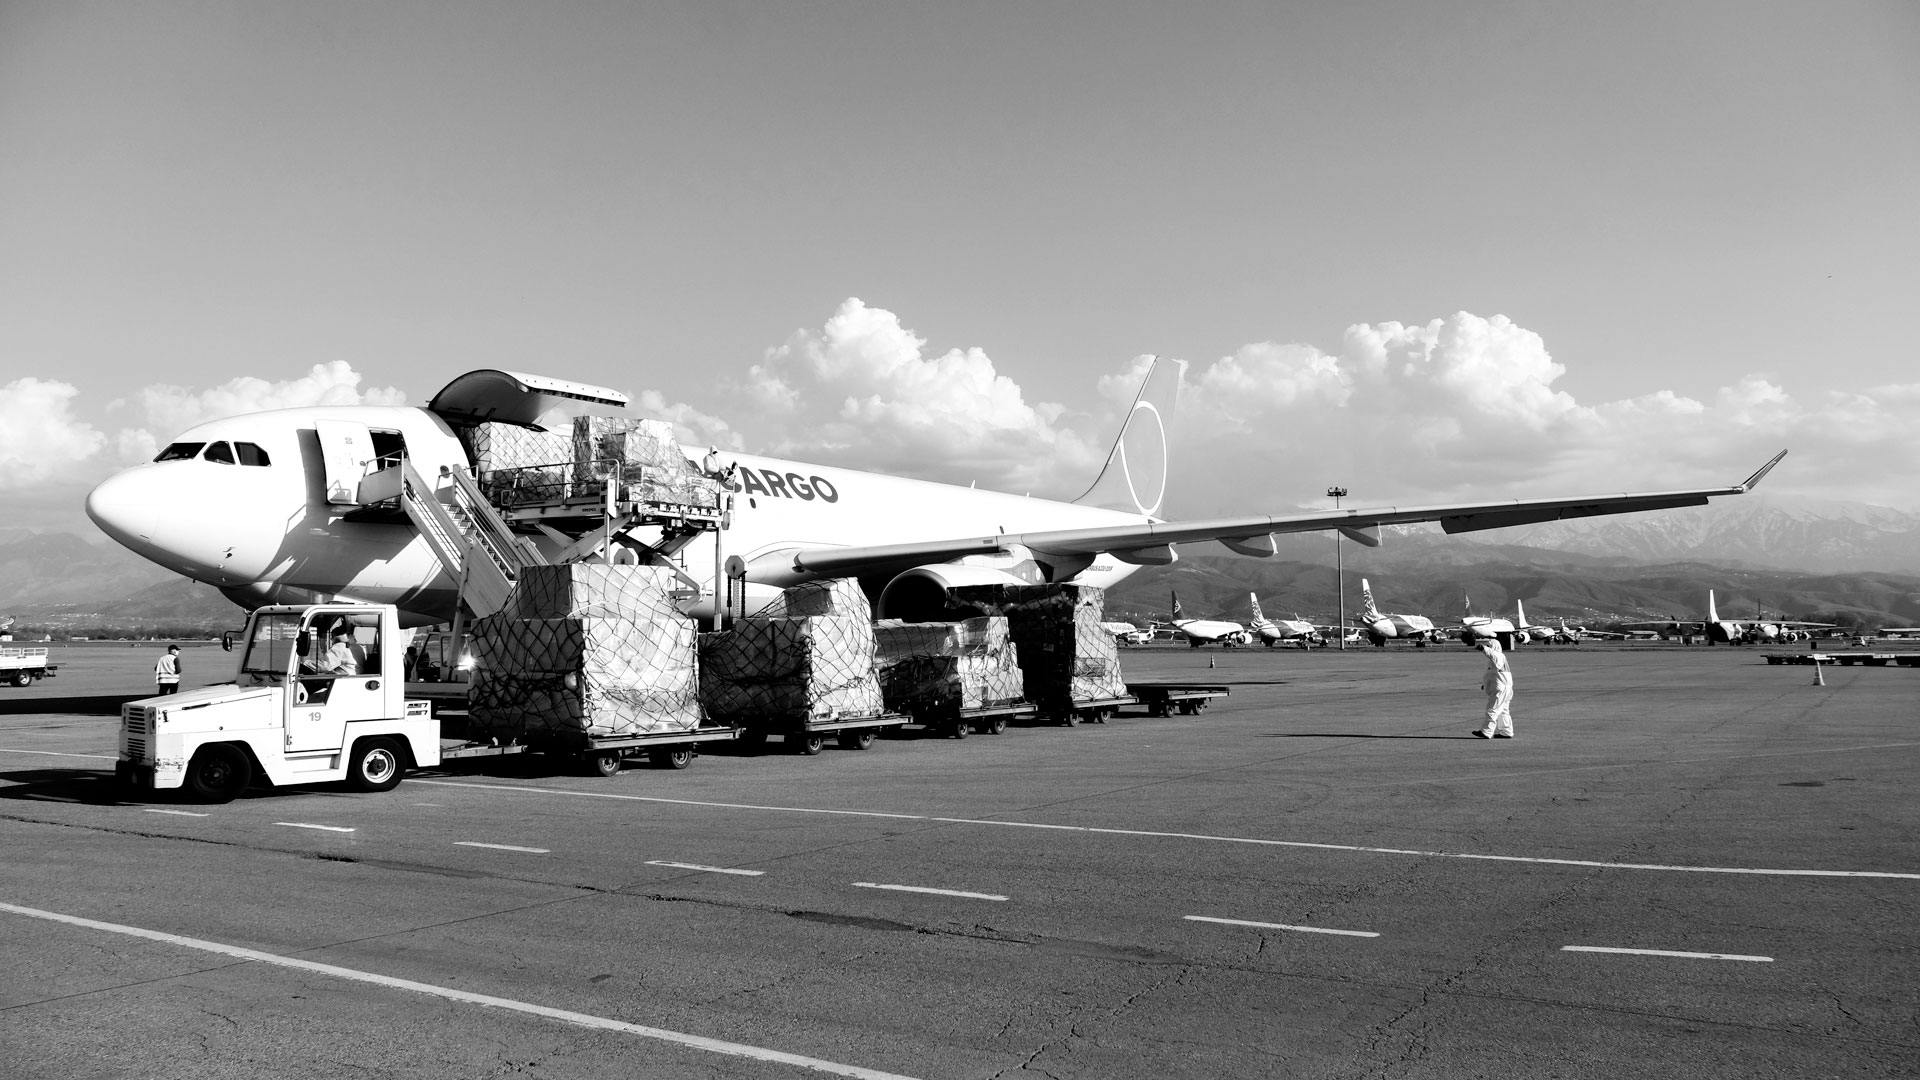 Avion cargo déchargeant une cargaison humanitaire. Affréter un avion pour organiser des vols humanitaires efficaces